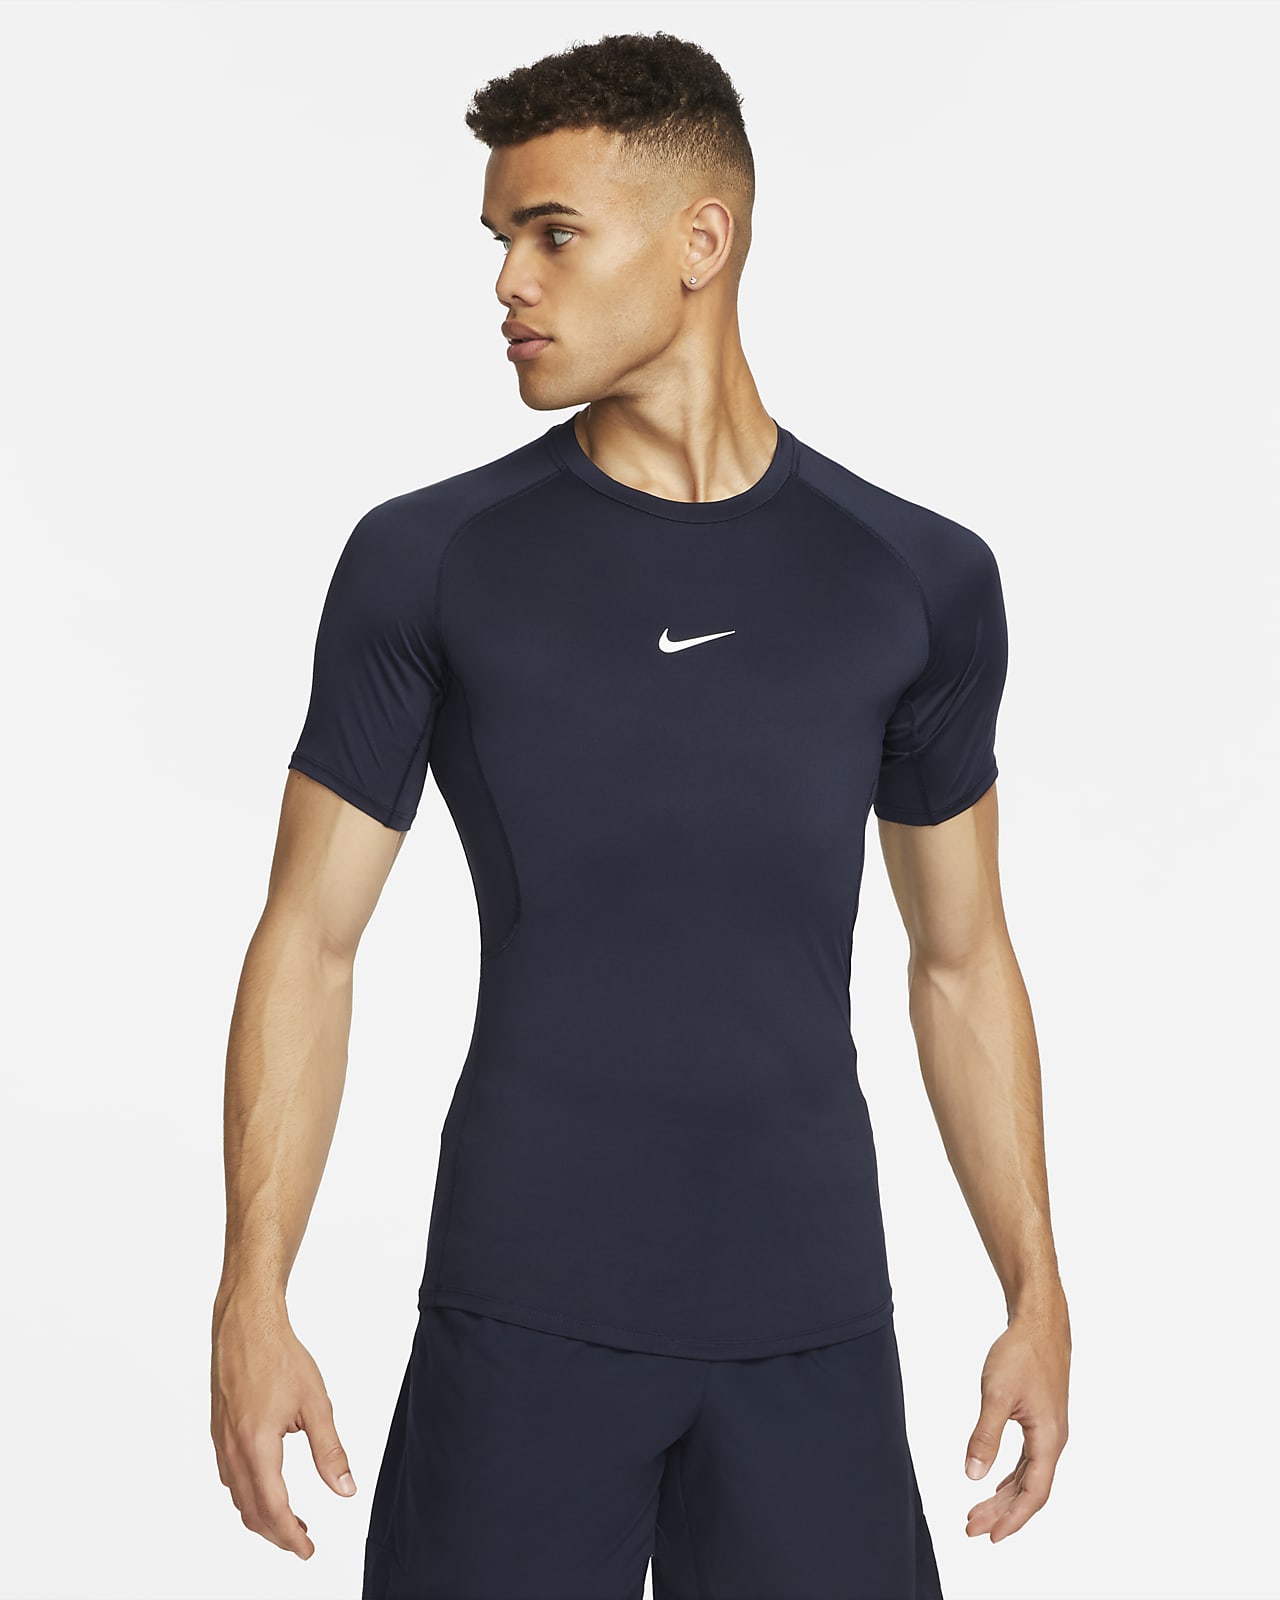 Nike – Pro Training – Kurzes, schwarzes Oberteil mit überkreuztem Design